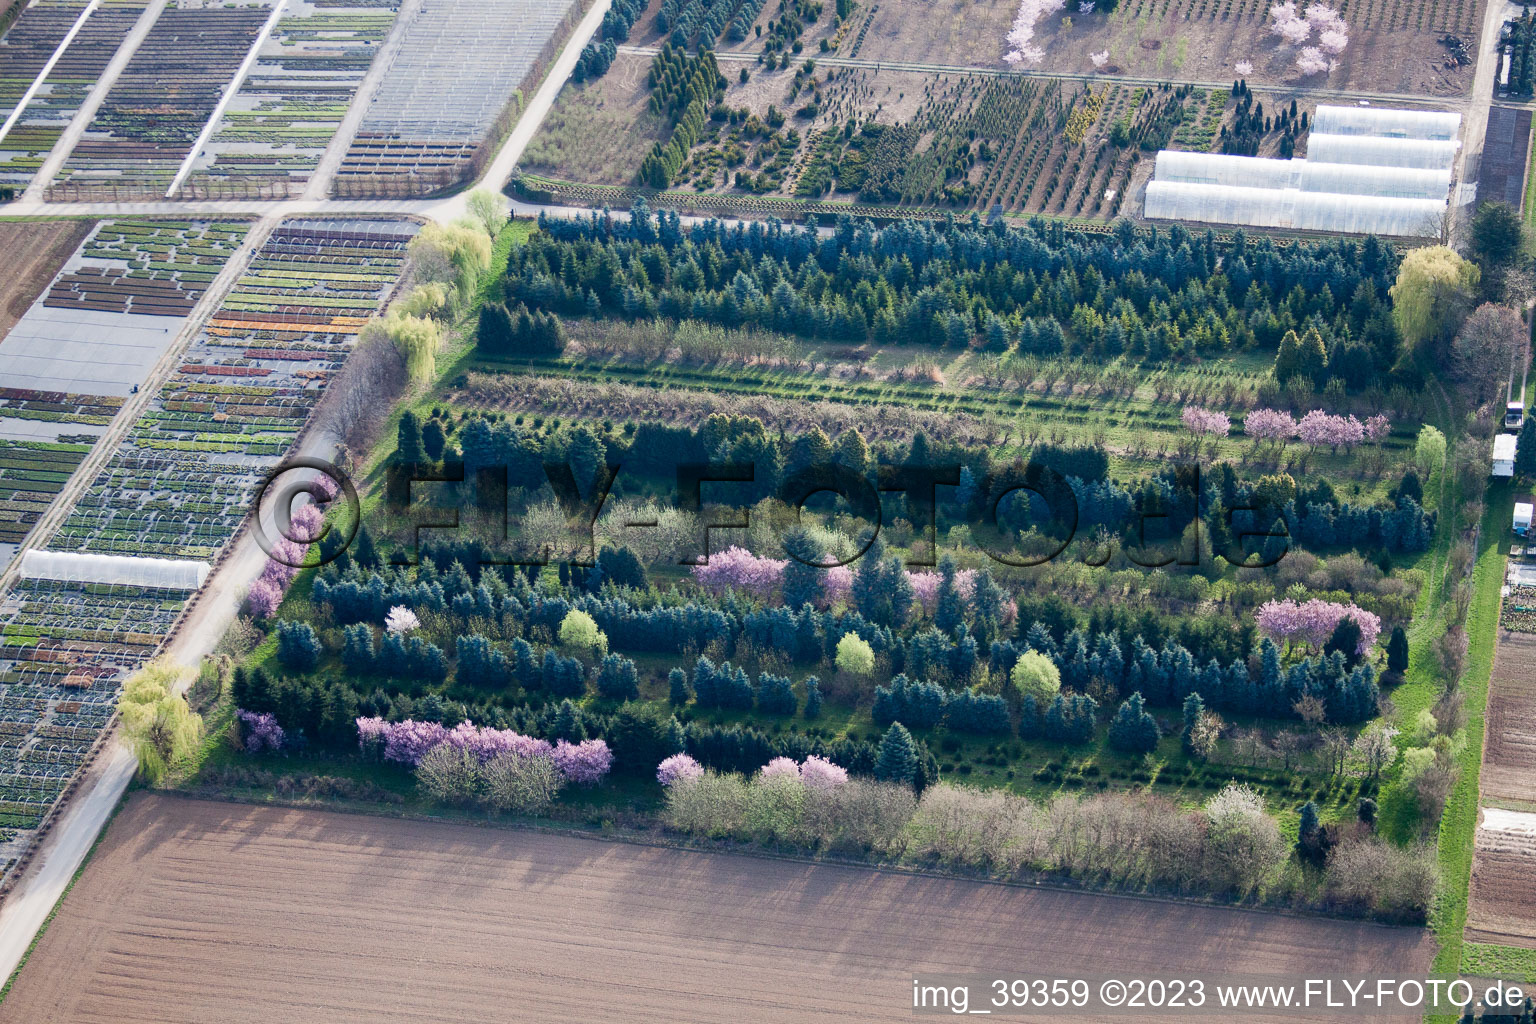 Vue d'oiseau de Vivaces Häussermann + arbres, dans le champ de maïs à Möglingen dans le département Bade-Wurtemberg, Allemagne